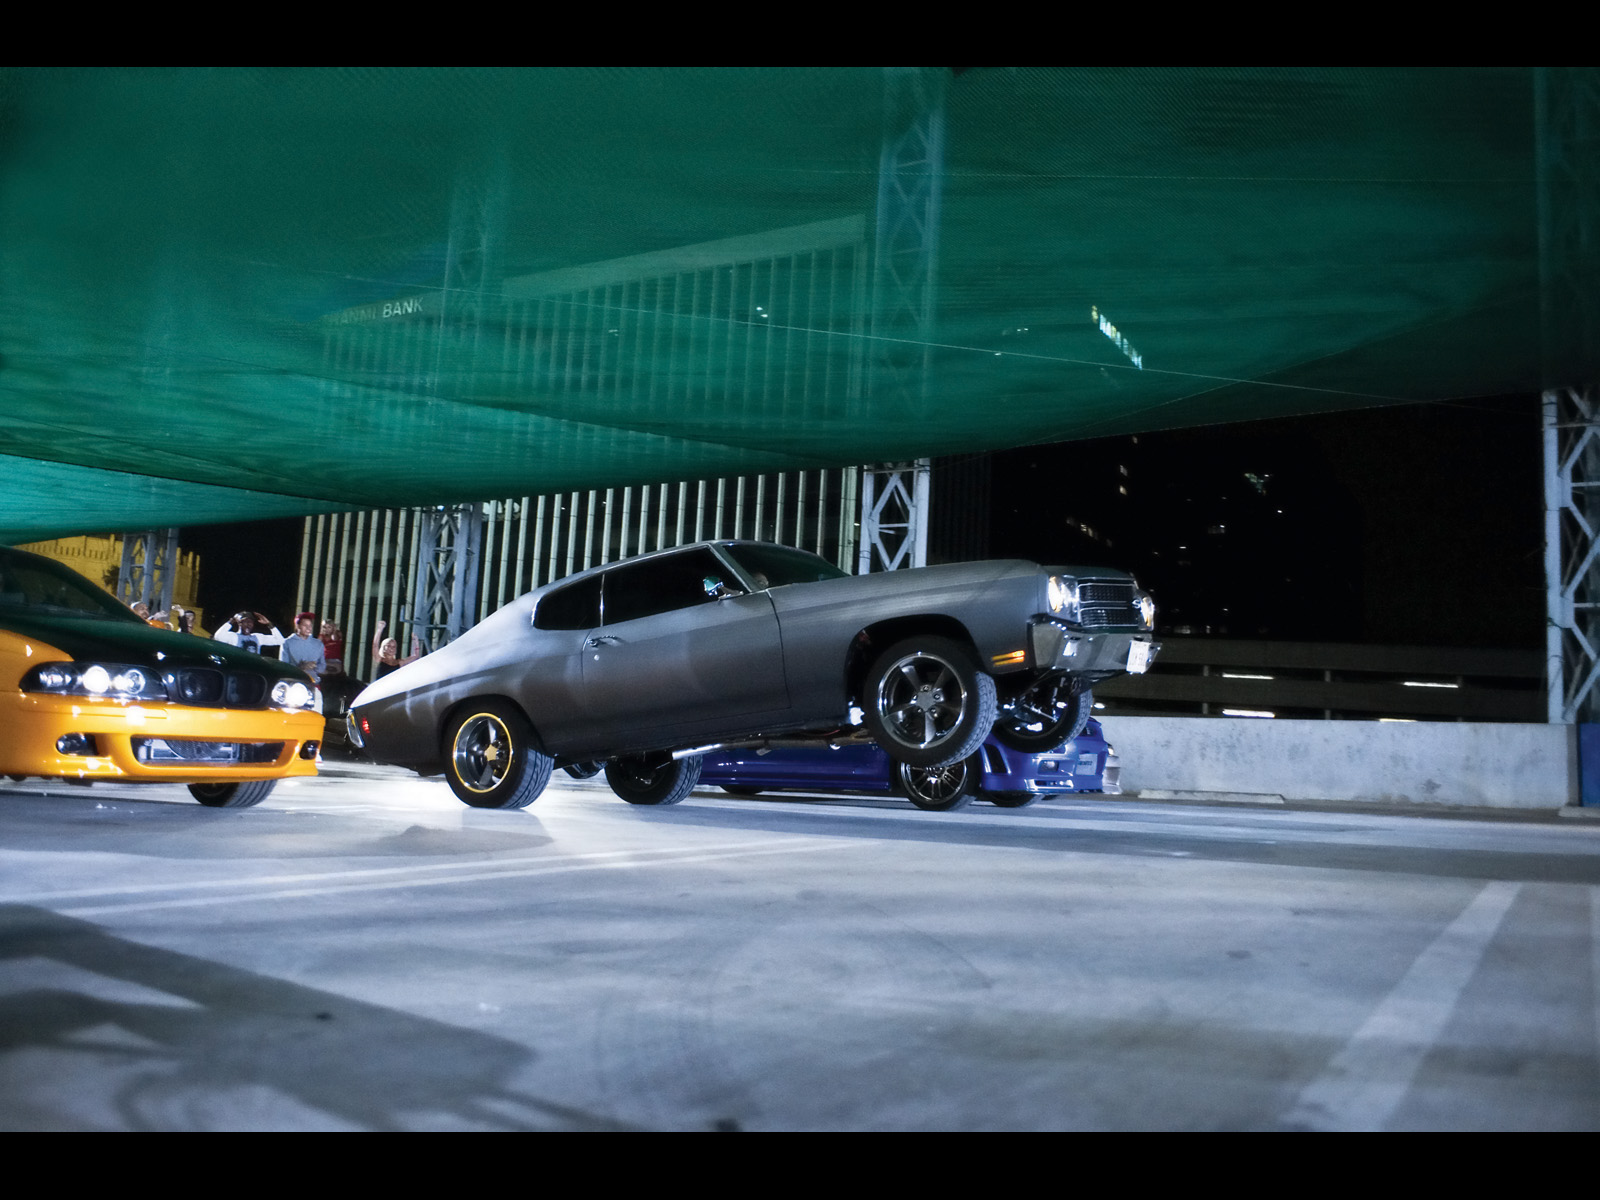 Fast Furious Movie Cars   Chevelle Wheelie   1600x1200   Wallpaper 1600x1200